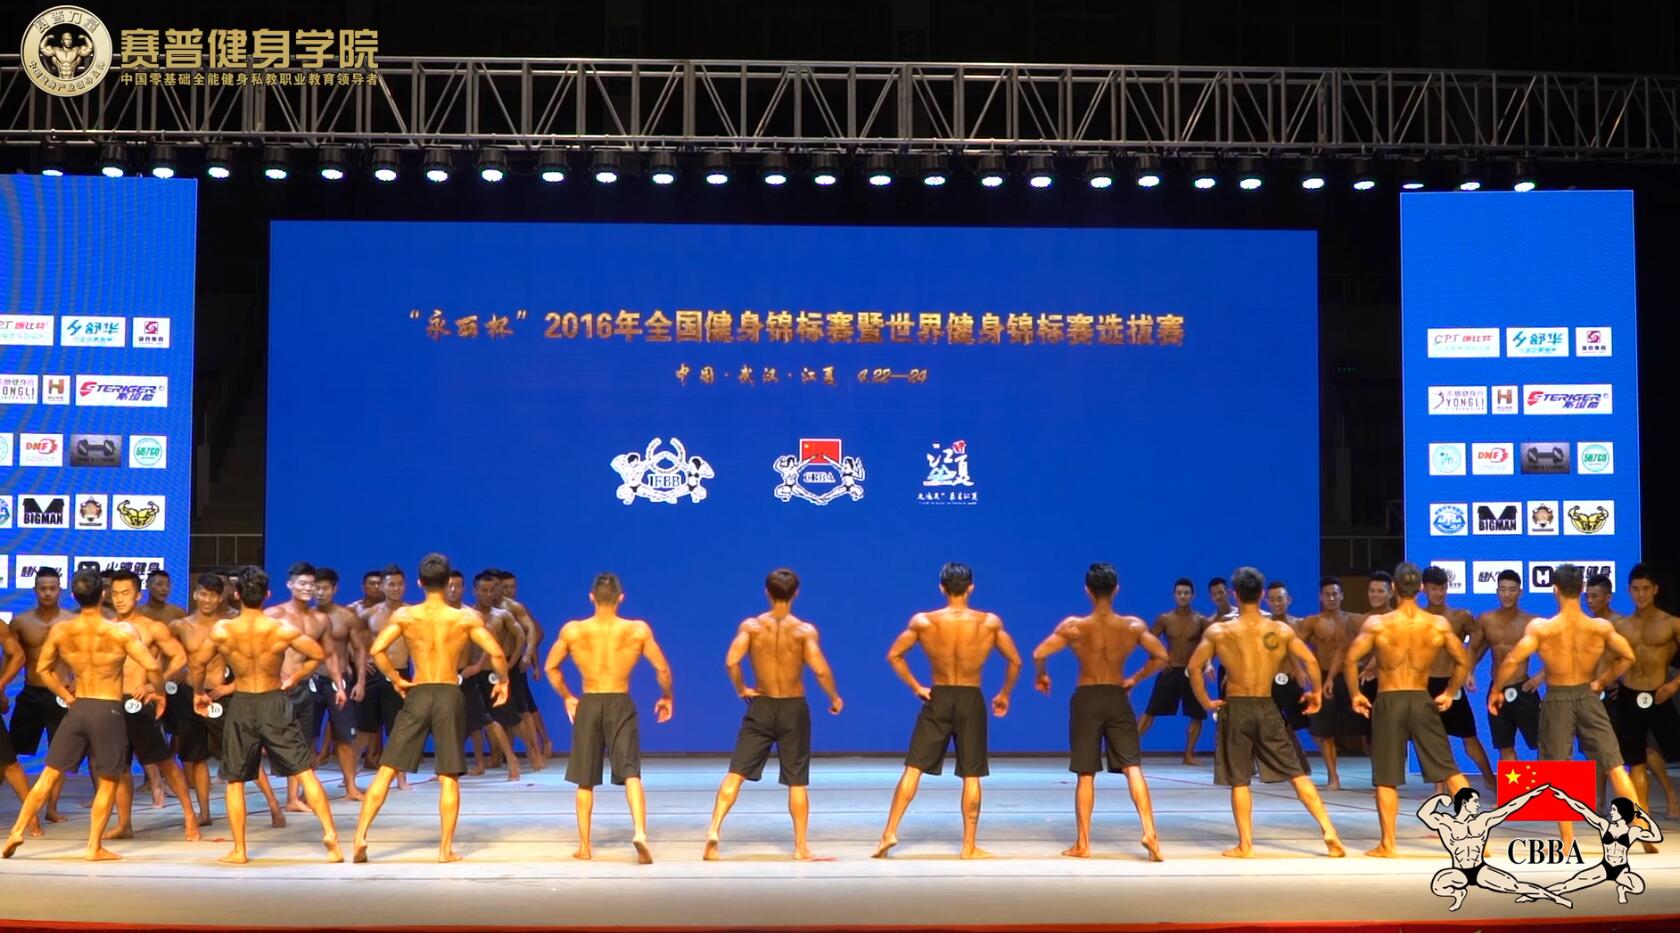 2016年全国健身锦标赛：男子健体A组 预赛